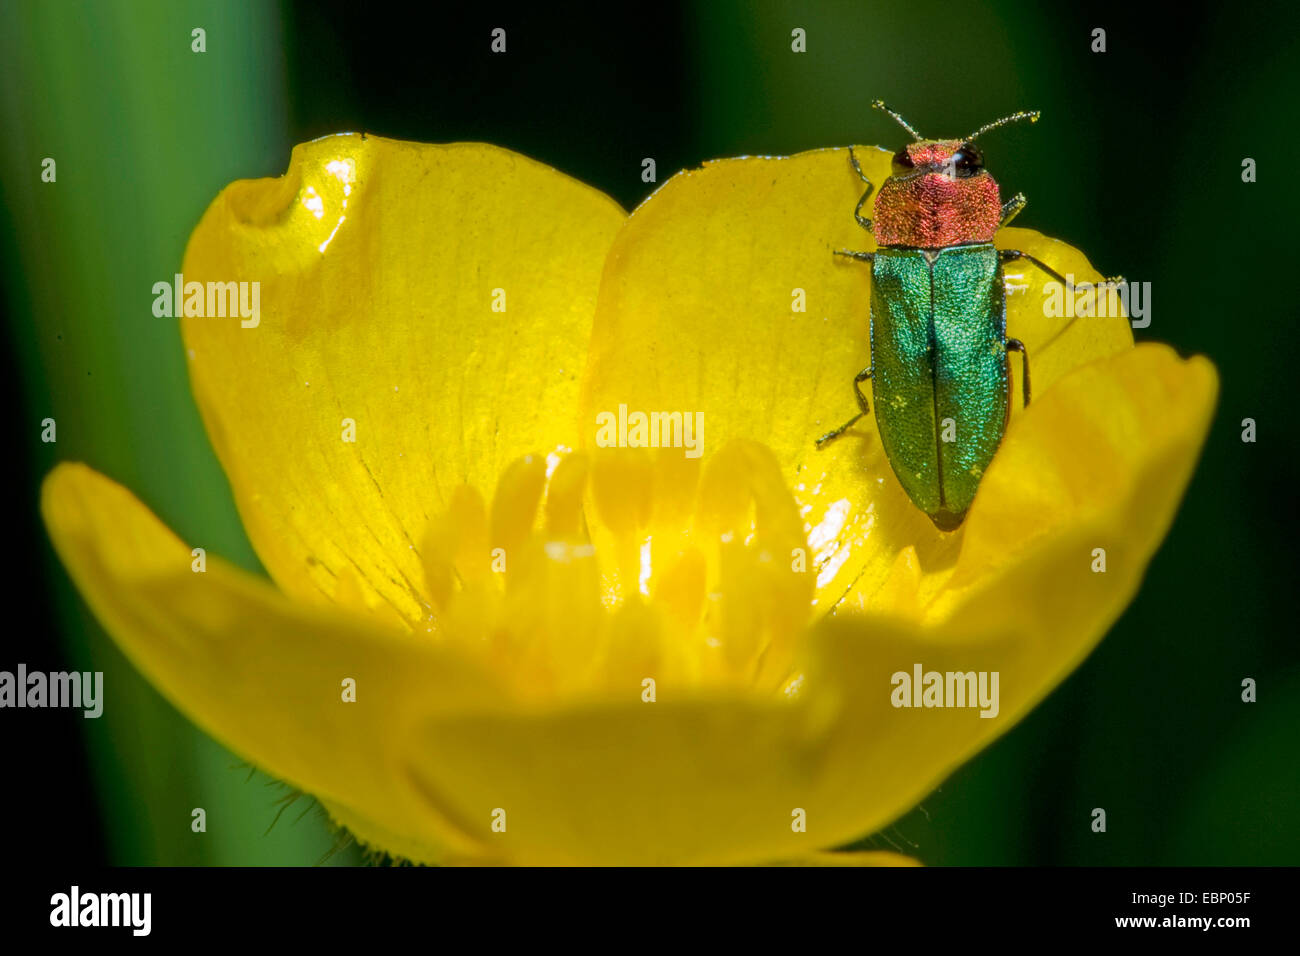 Jewel beetle, coléoptère bois métallique (Anthaxia nitidula), sur une fleur, Allemagne Banque D'Images